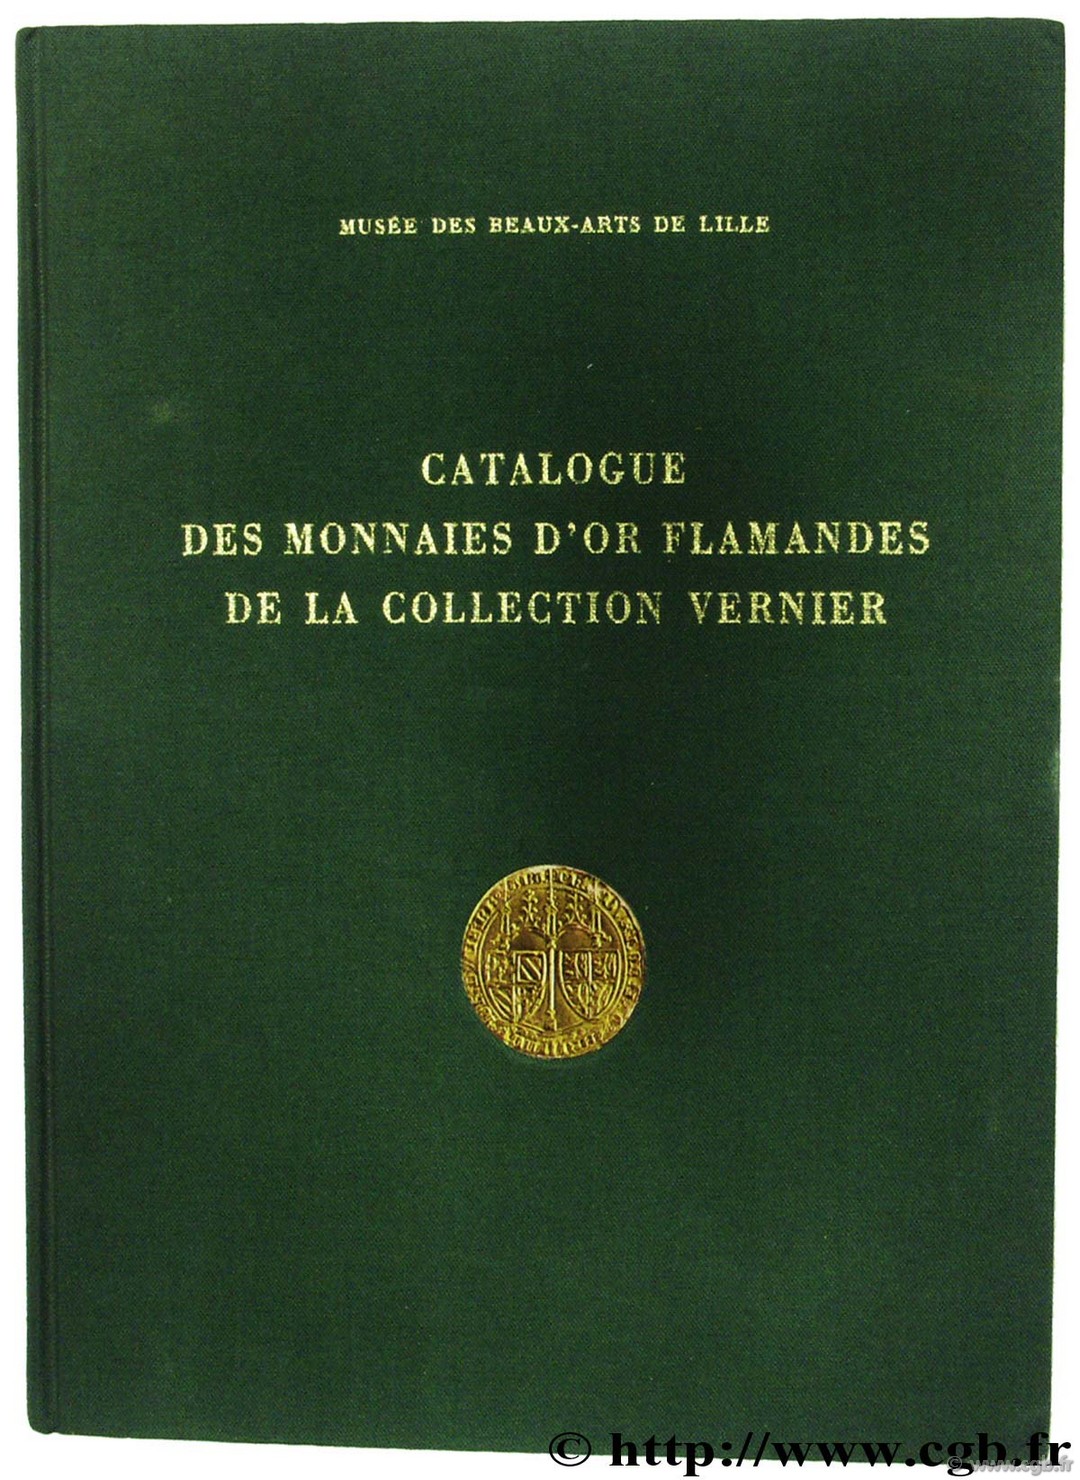 Catalogue des monnaies d or flamandes de la collection Vernier BASTIEN P., DUPLESSY J.